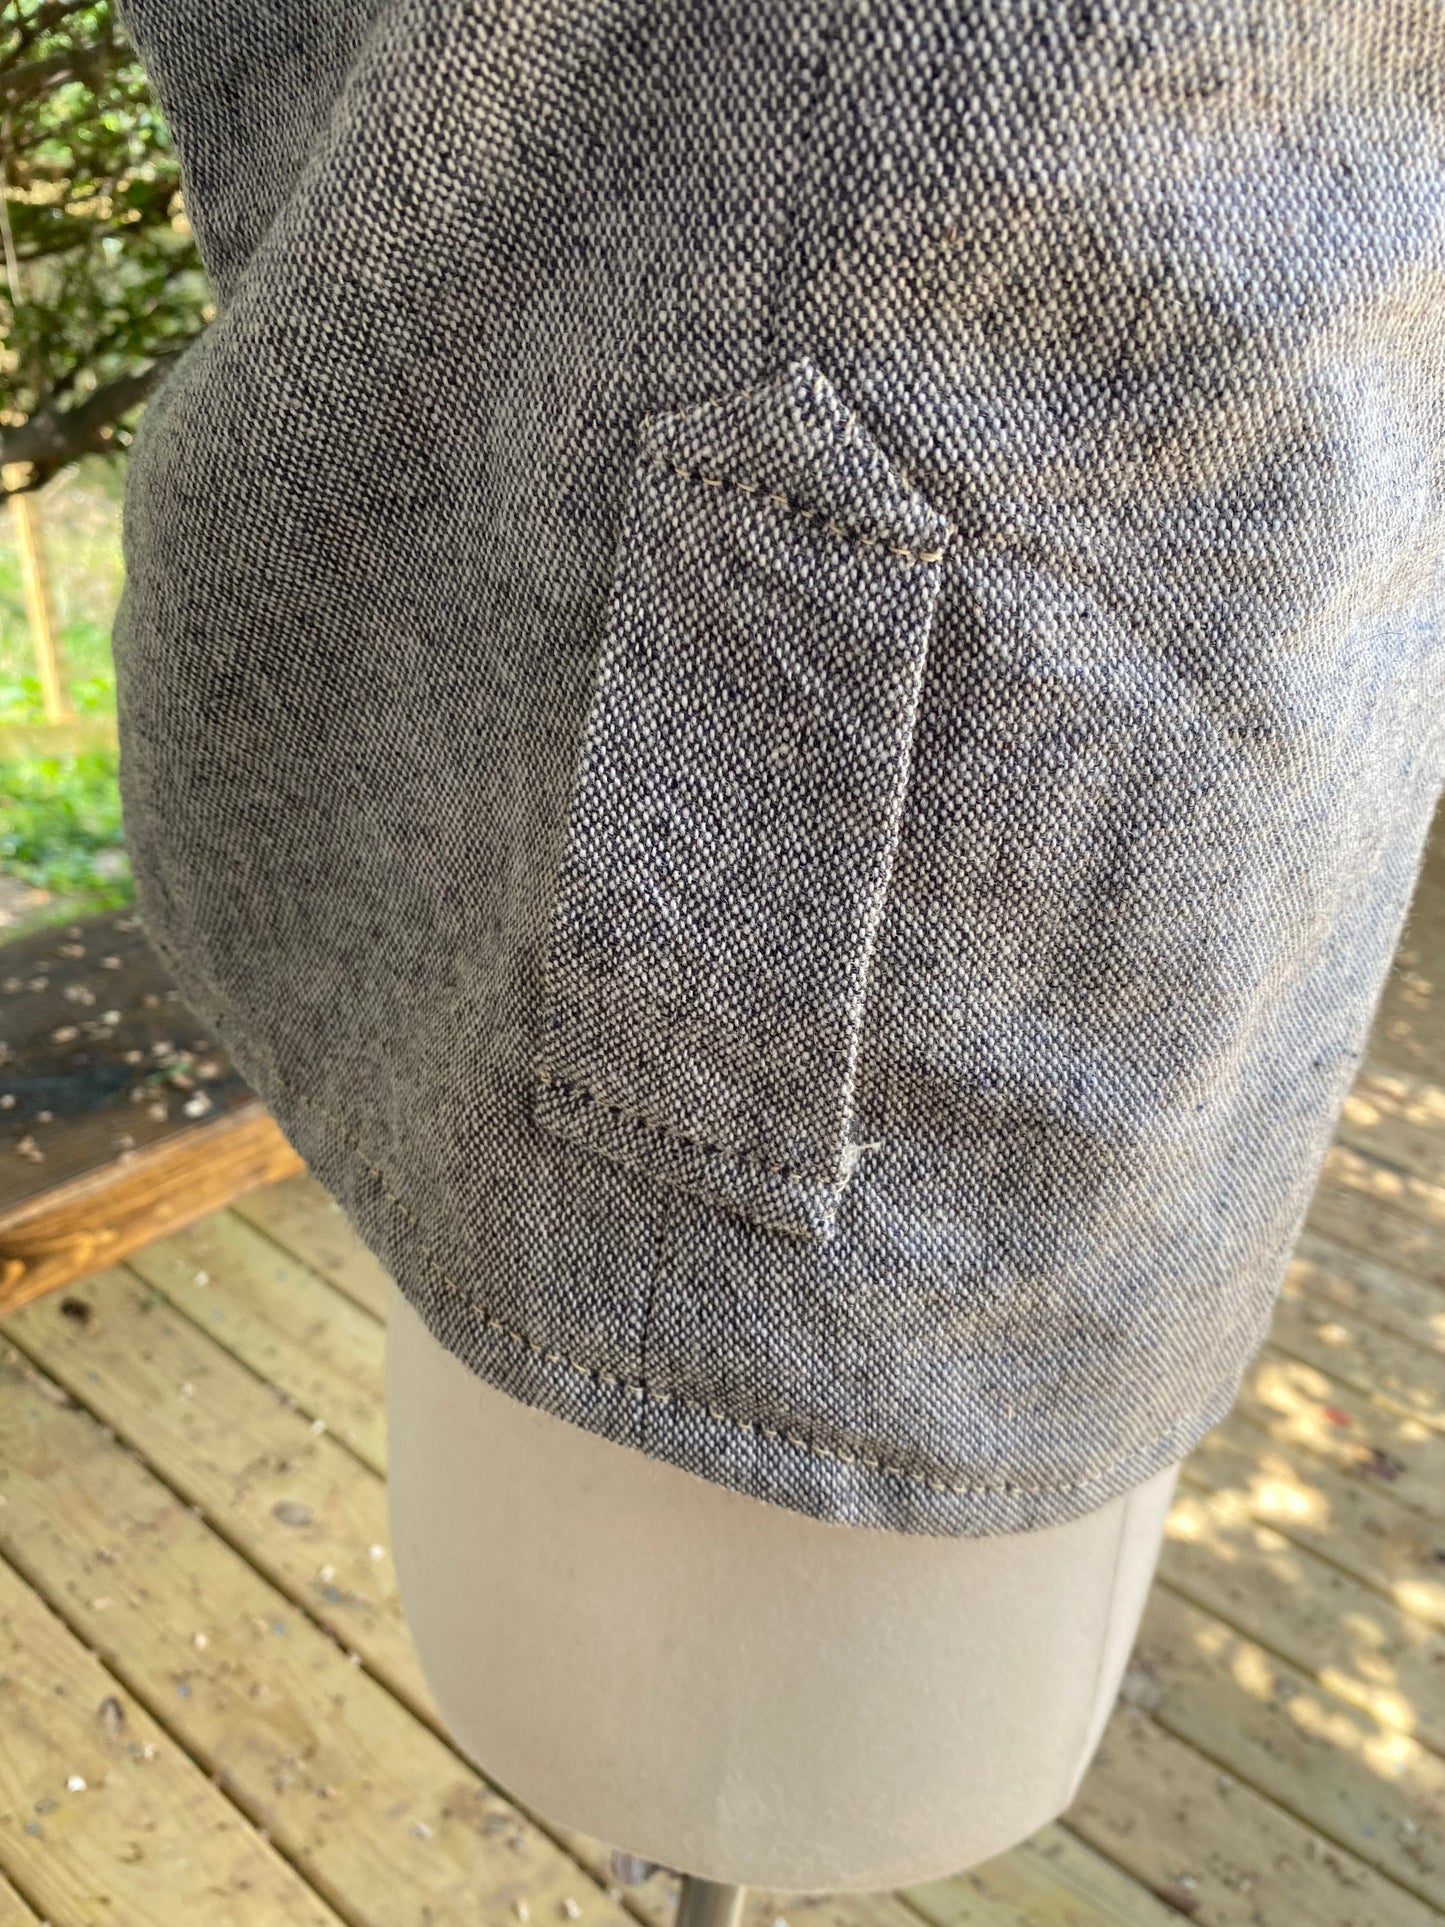 Group-Buy Augusta Depot Tweed Jacket